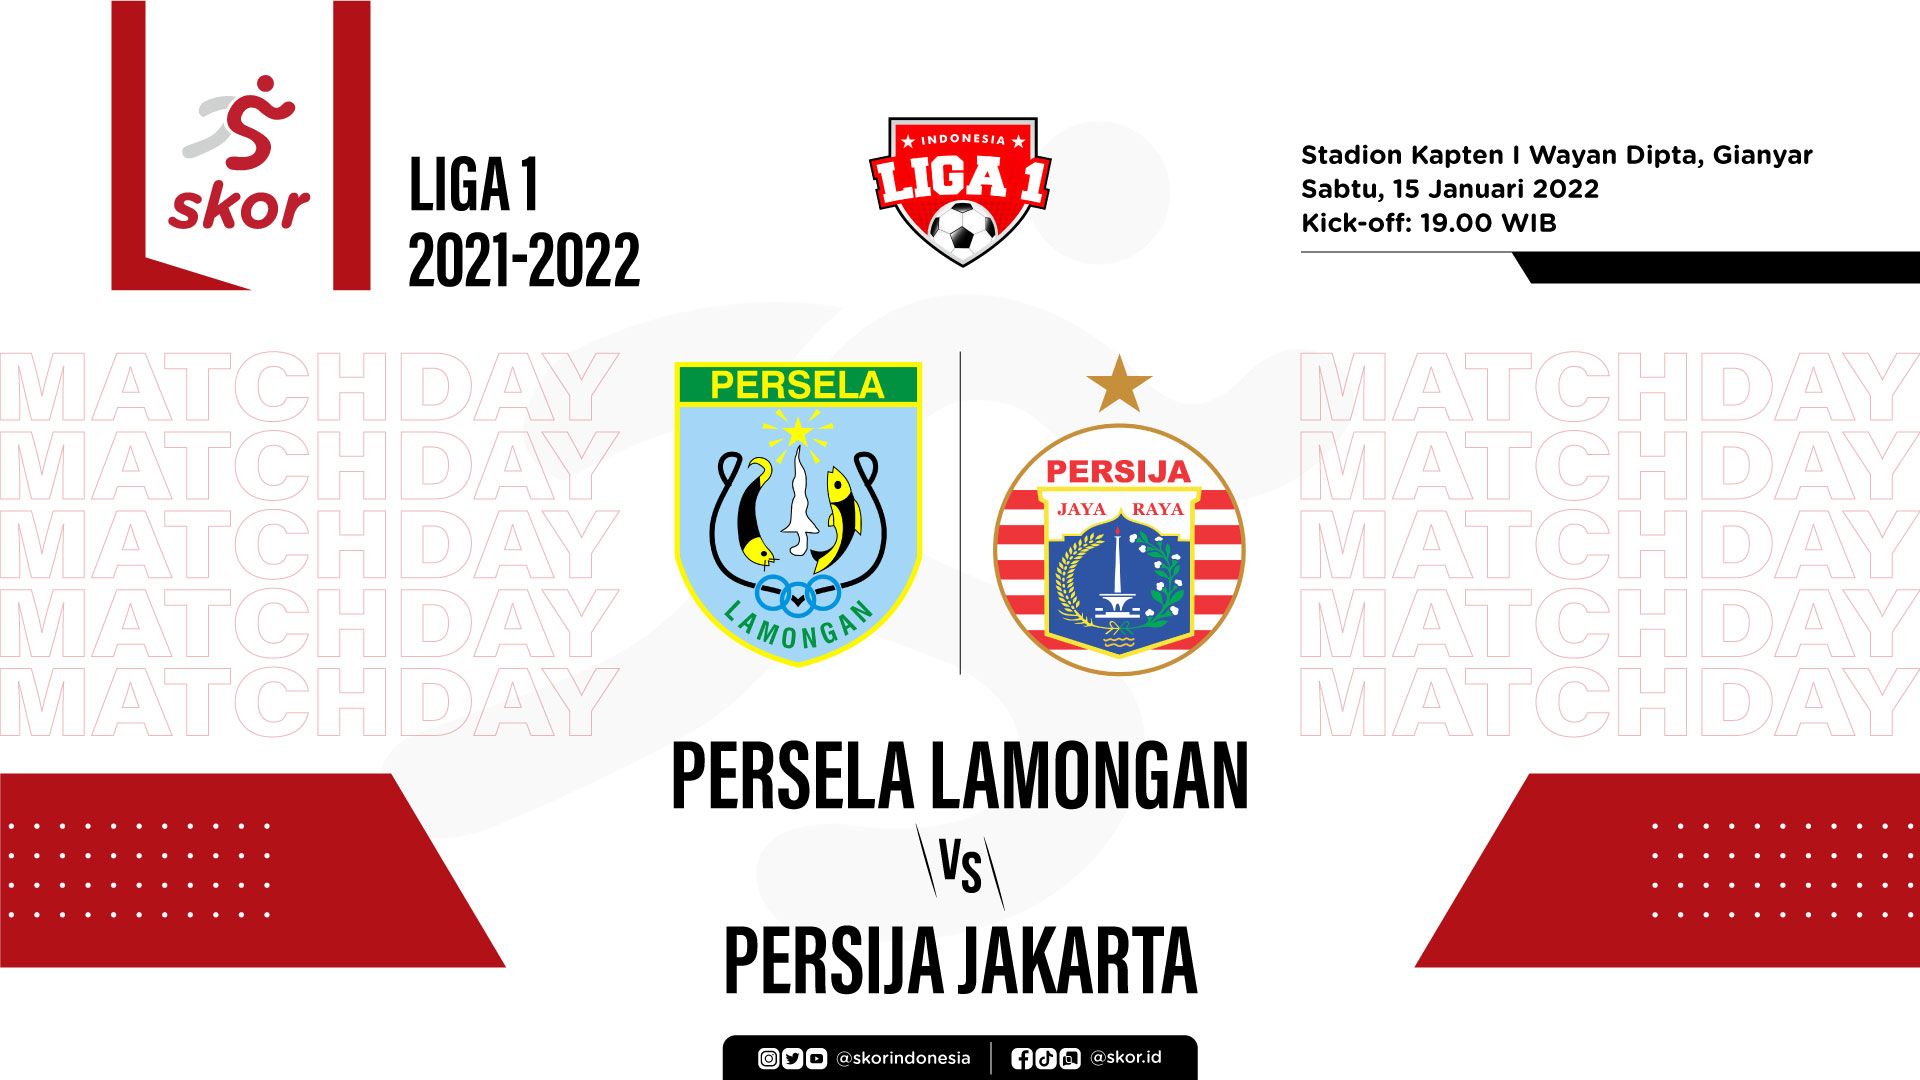 Persela Lamongan vs Persija Jakarta